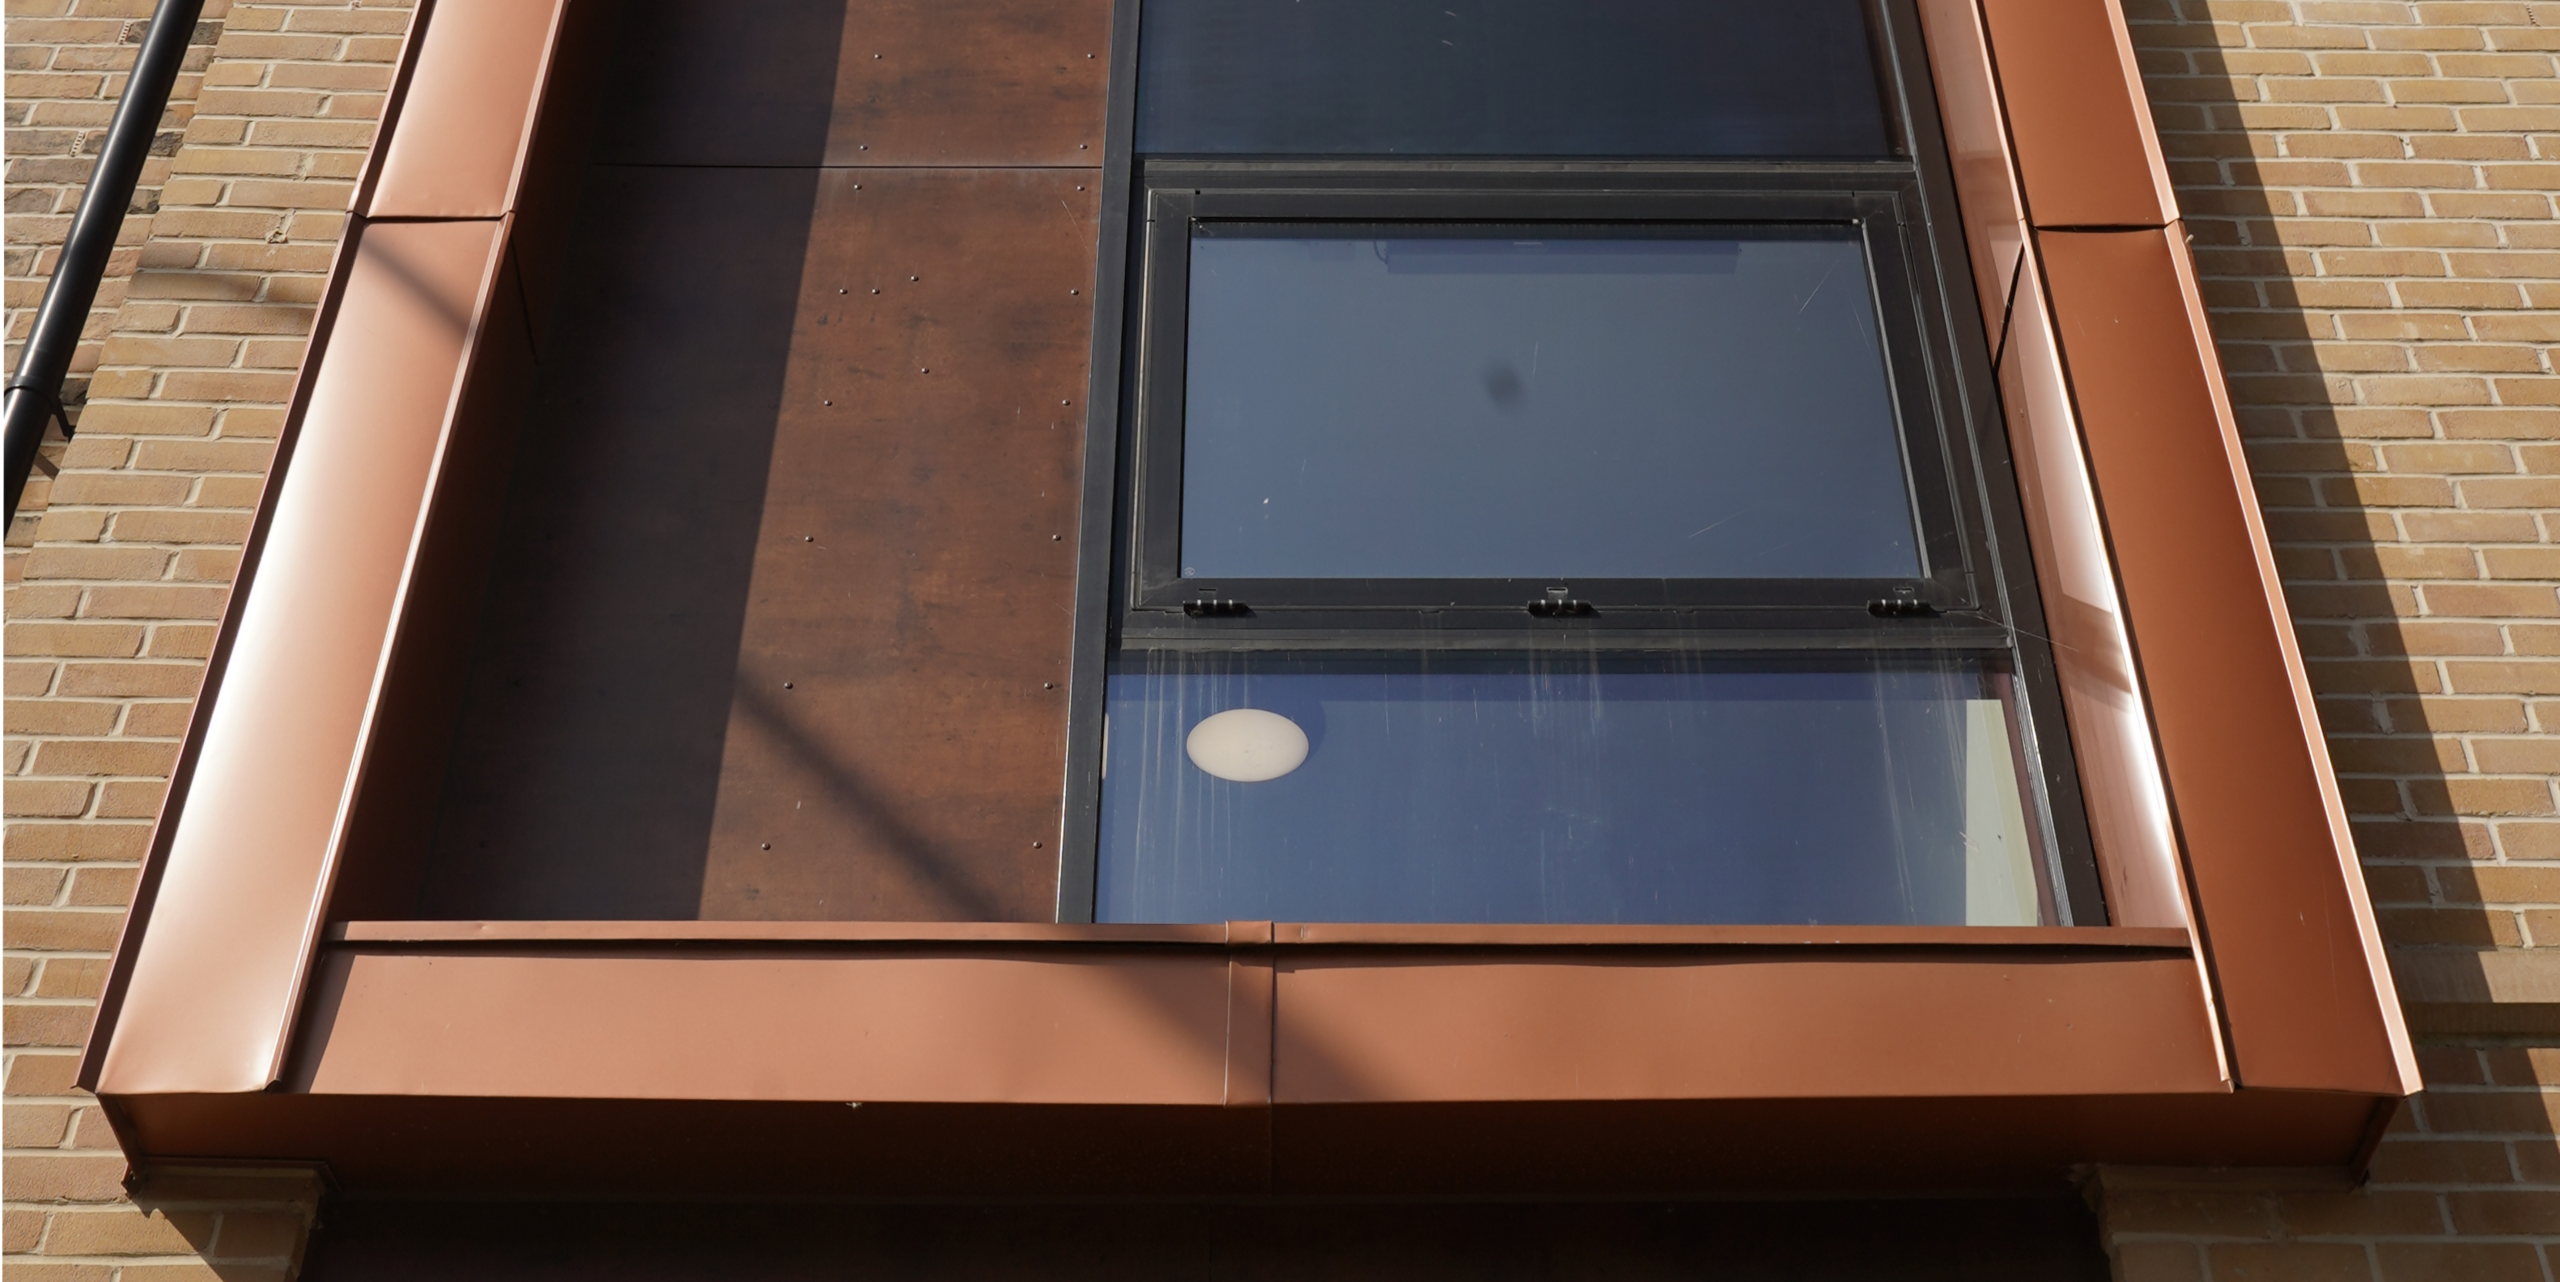 Nahaufnahme eines Fensterbereichs an der Fassade einer Wohnhausanlage in der Nethan Street in Glasgow, umrahmt von FALZONAL in Neukupfer. Dieses qualitativ hochwertige PREFA Aluminiumprodukt ergänzt die klare Glasarchitektur mit seiner warmen Kupfertönung und schafft eine visuelle Verbindung zwischen moderner Bauweise und traditionellen Materialien. Die Verarbeitung von FALZONAL betont die präzise und anspruchsvolle Gestaltung des Wohngebäudes.